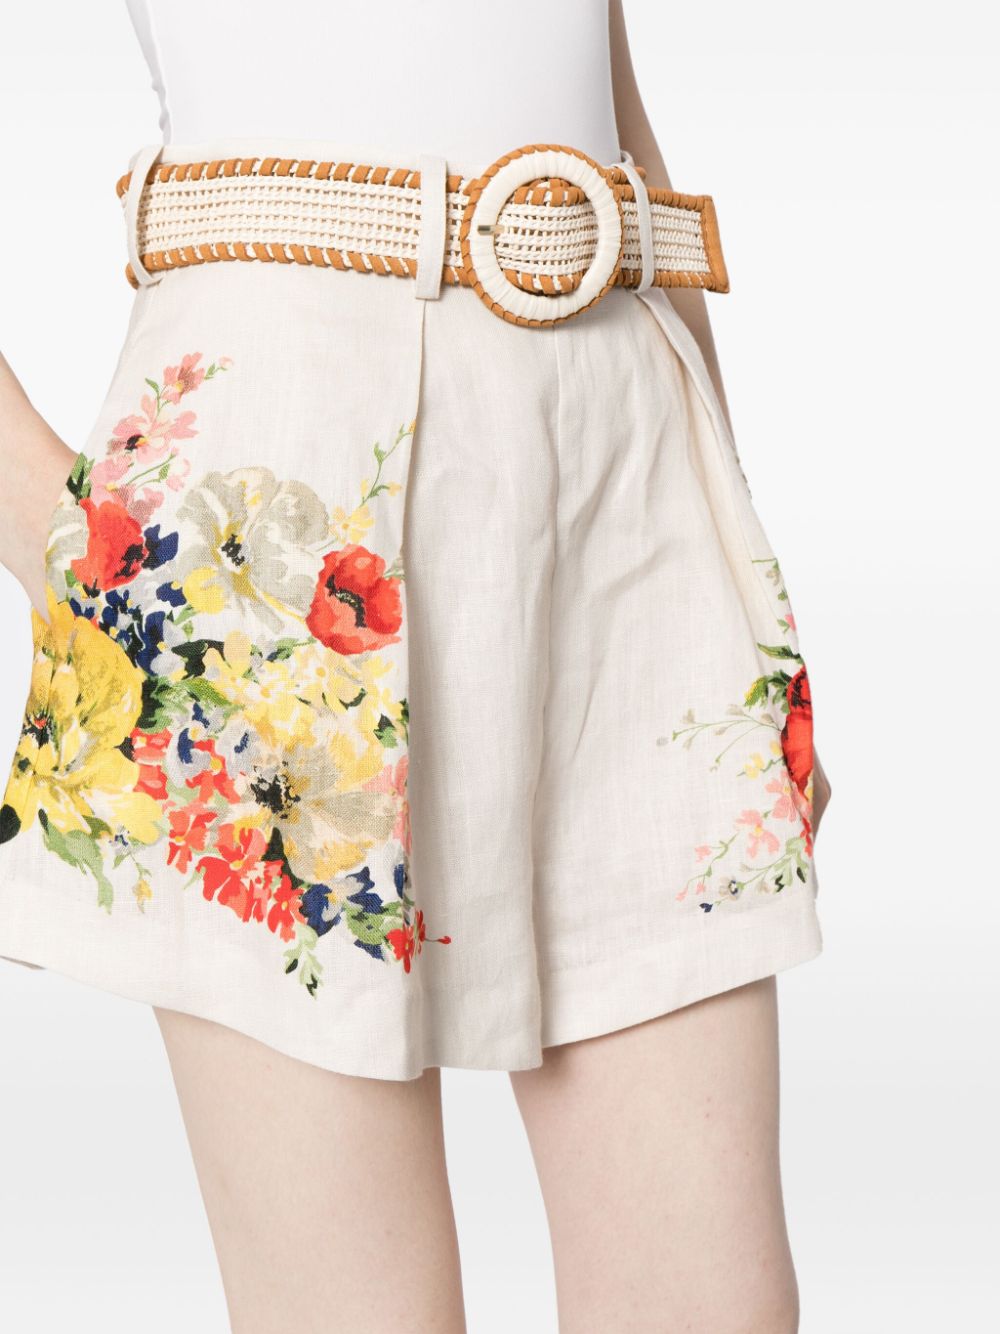 Alight Tuck floral shorts